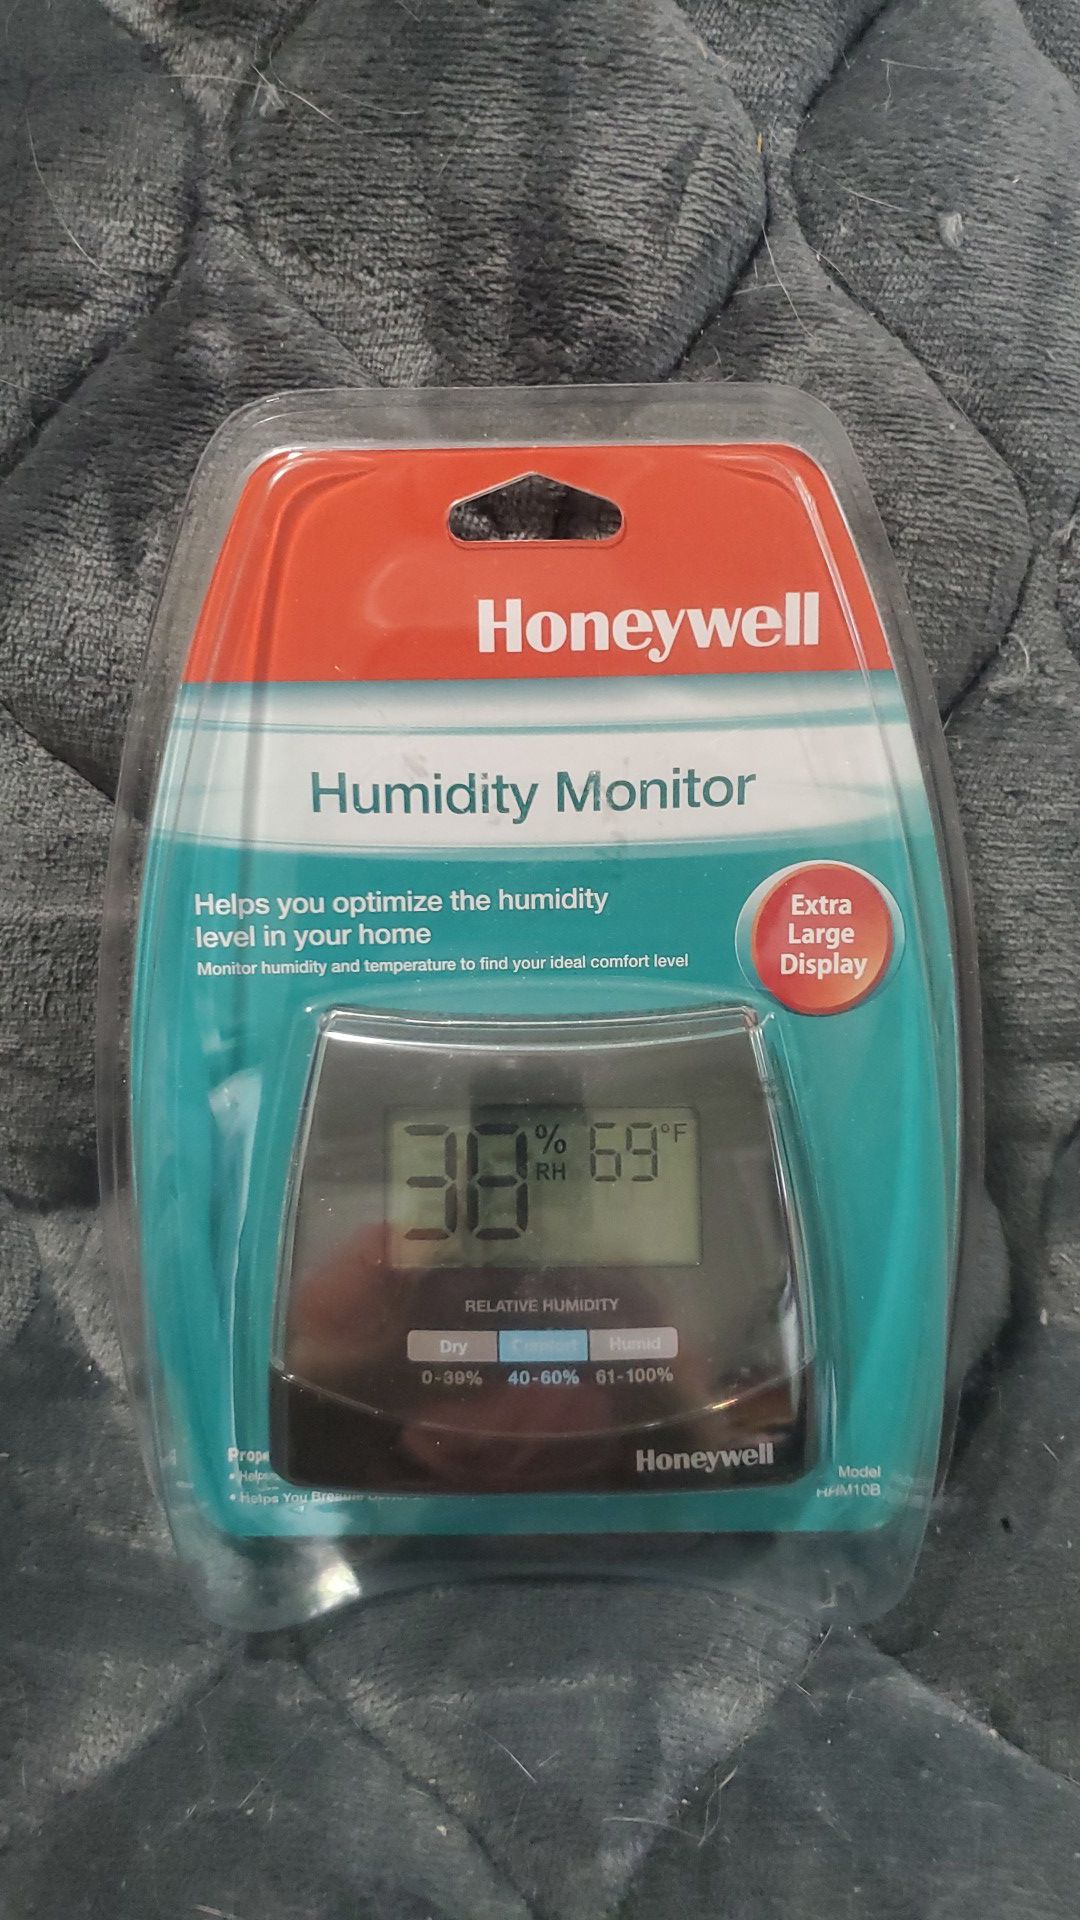 NEW Humidity Monitor